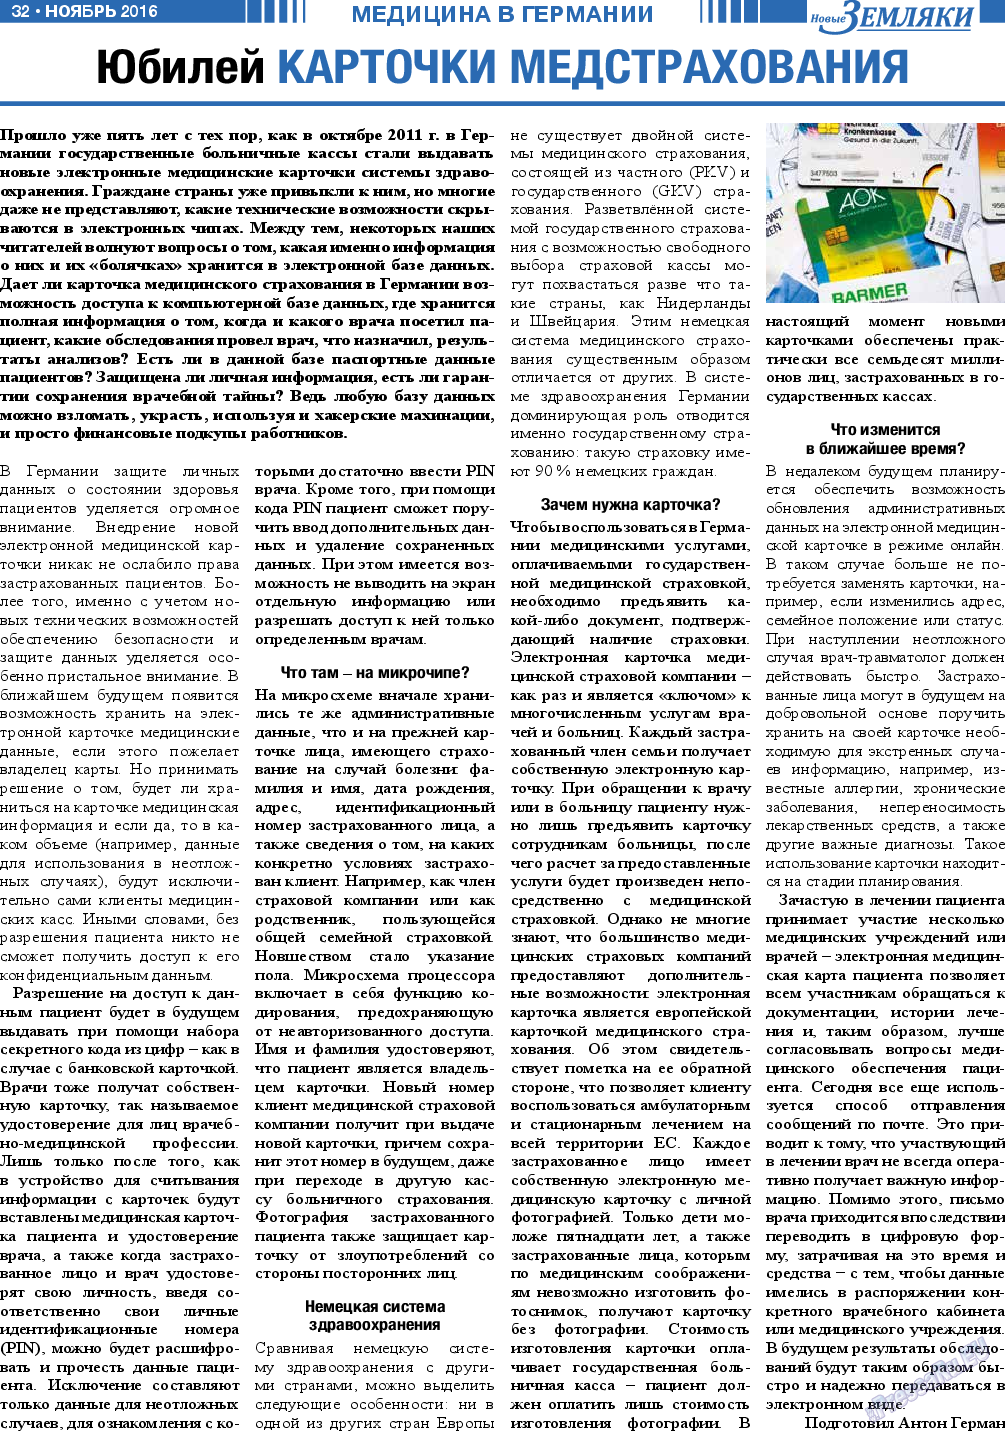 Новые Земляки (газета). 2016 год, номер 11, стр. 32